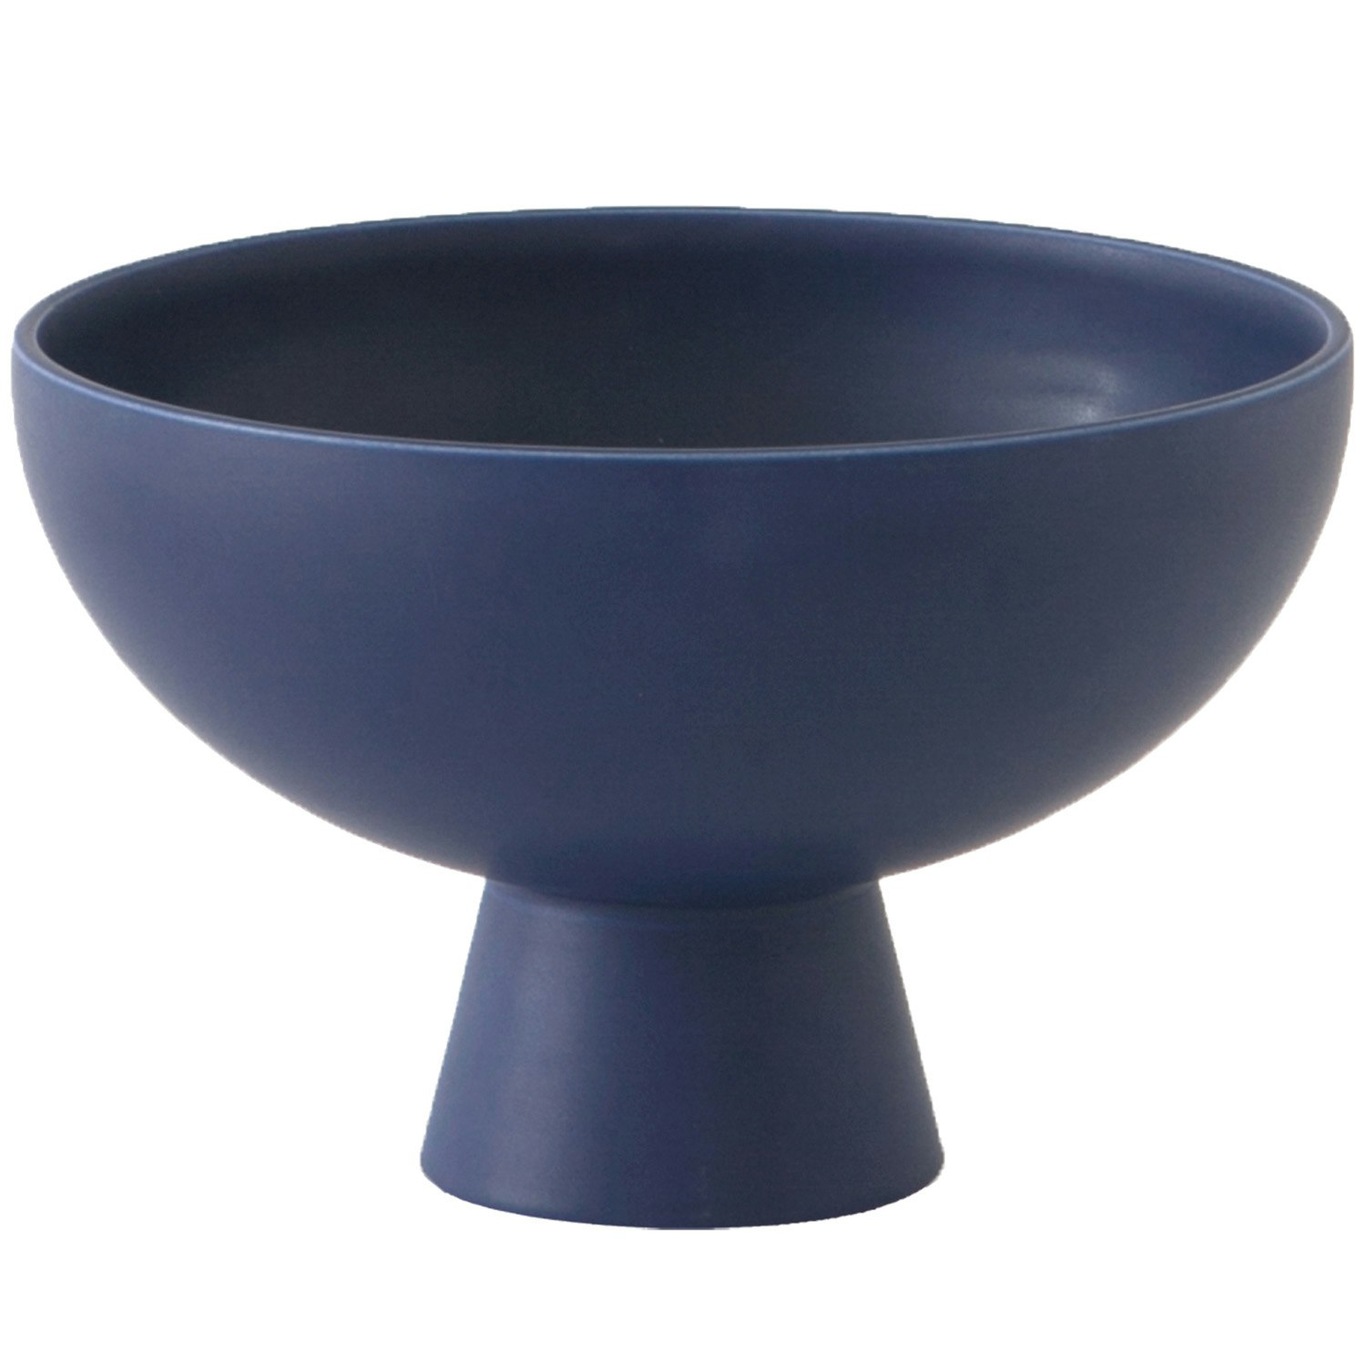 Strøm Bowl With Foot Ø22 cm, Blue